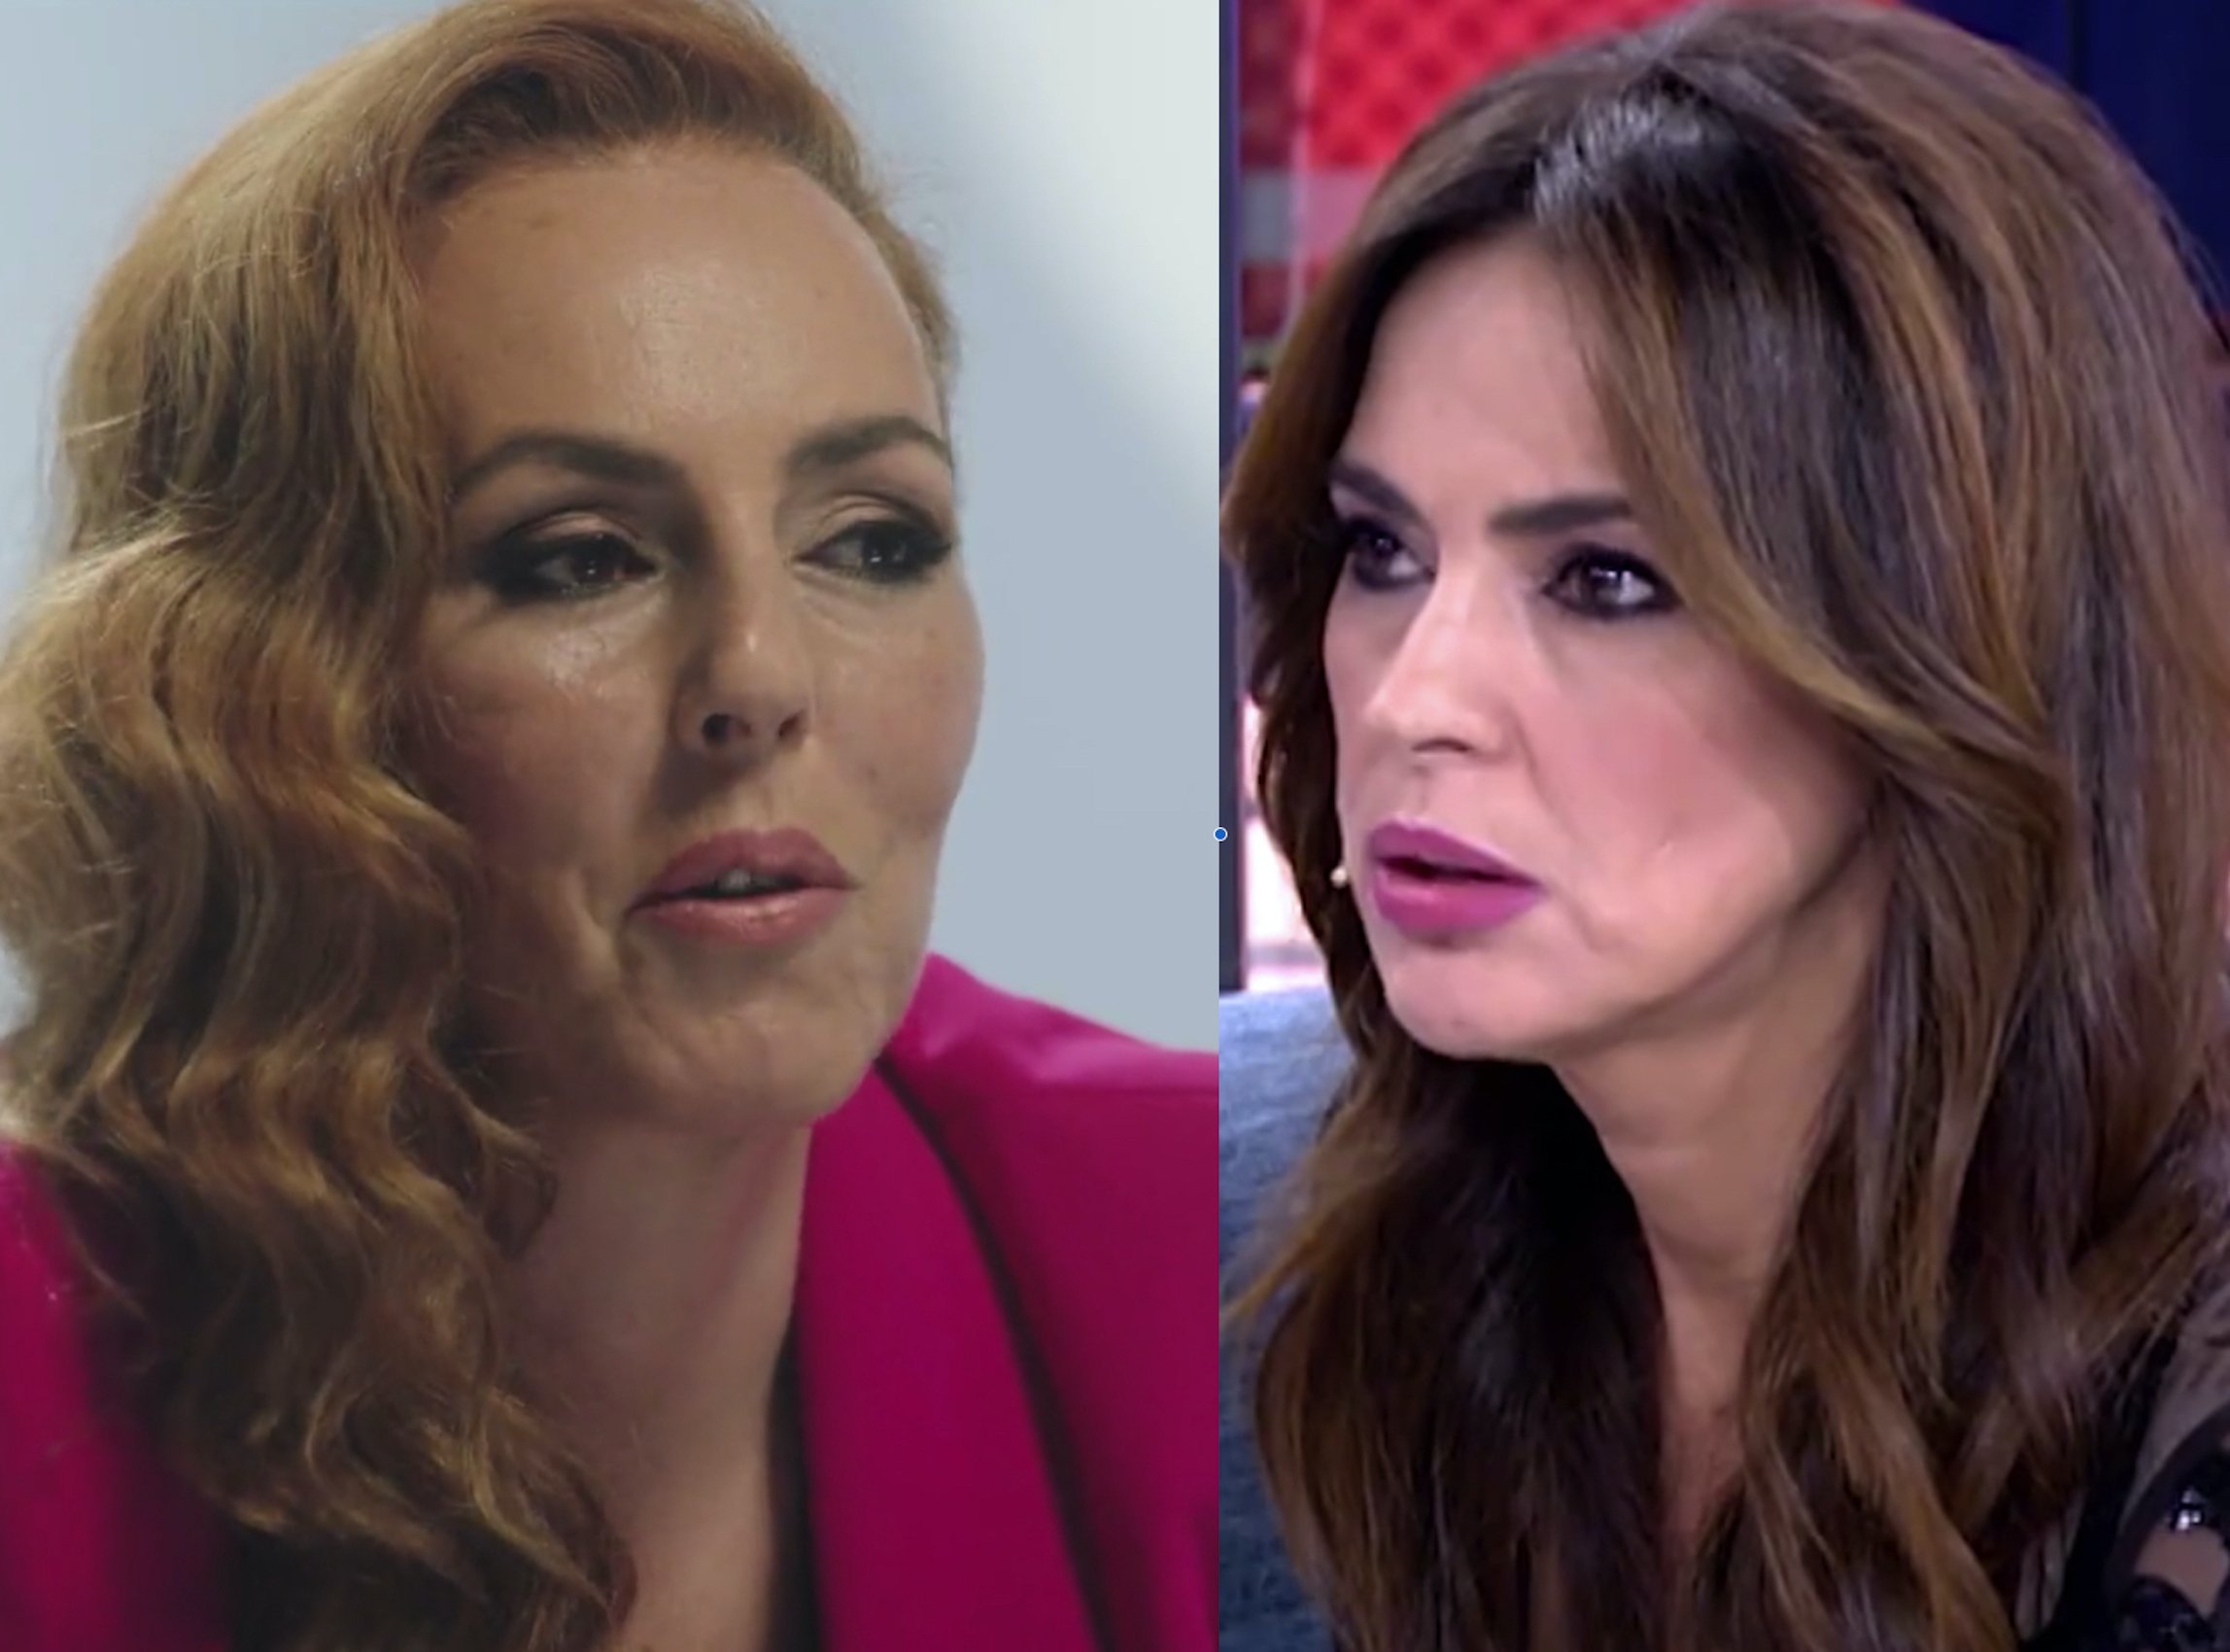 Rociíto s'acarnissa com mai contra Olga Moreno, dona d'A.D.: "asquerosa", polls